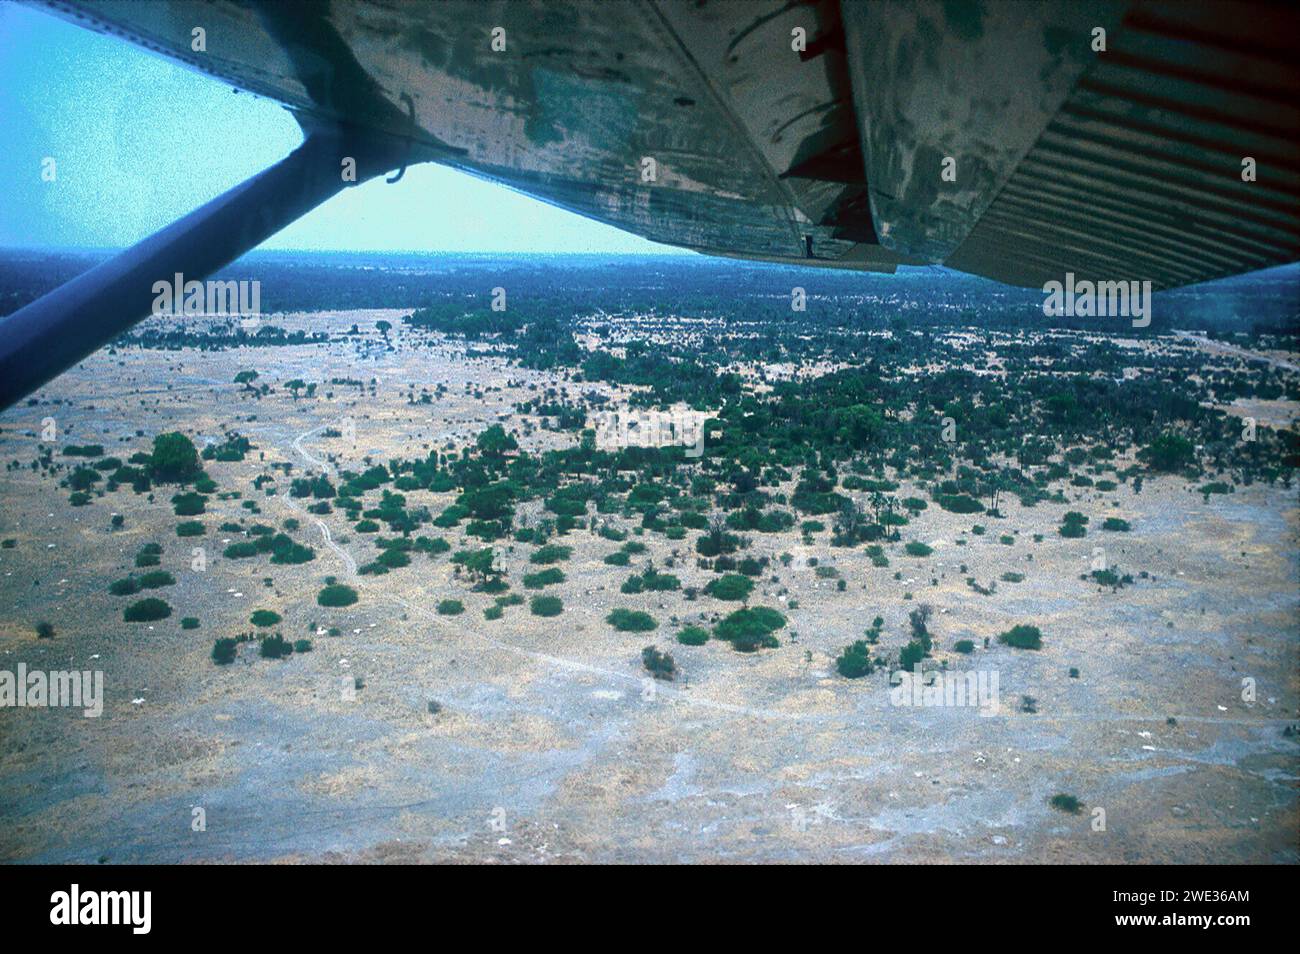 Vue aérienne depuis un petit vol en avion à travers le delta, du camp de Mombo au camp de Jedibe, prise en 1993, Delta de l'Okavango, Botswana, Afrique Banque D'Images